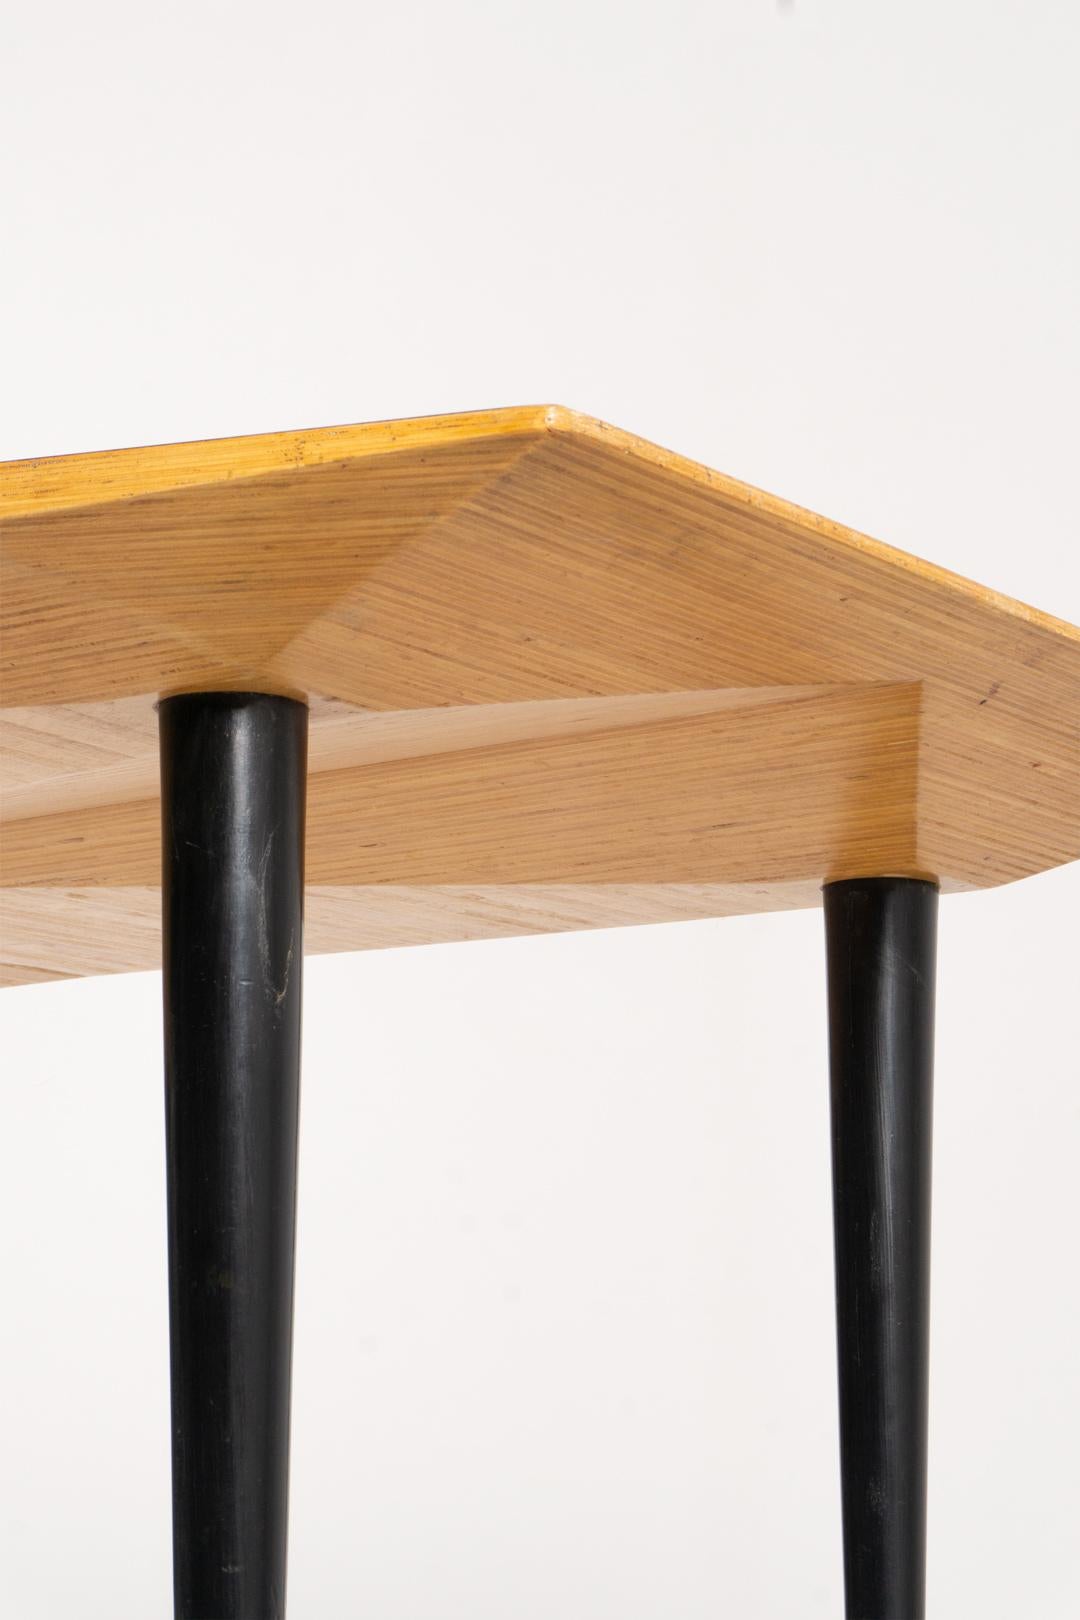 Sehr spezielle Carlo De Carli Tisch, hergestellt von Tecno Milano in sehr gutem Zustand.
Die Tischplatte ist aus Palisanderfurnier, die Beine sind geschraubt, gedrechselt und schwarz lackiert.

Carlo De Carli (1910-1999) war nicht nur ein Architekt